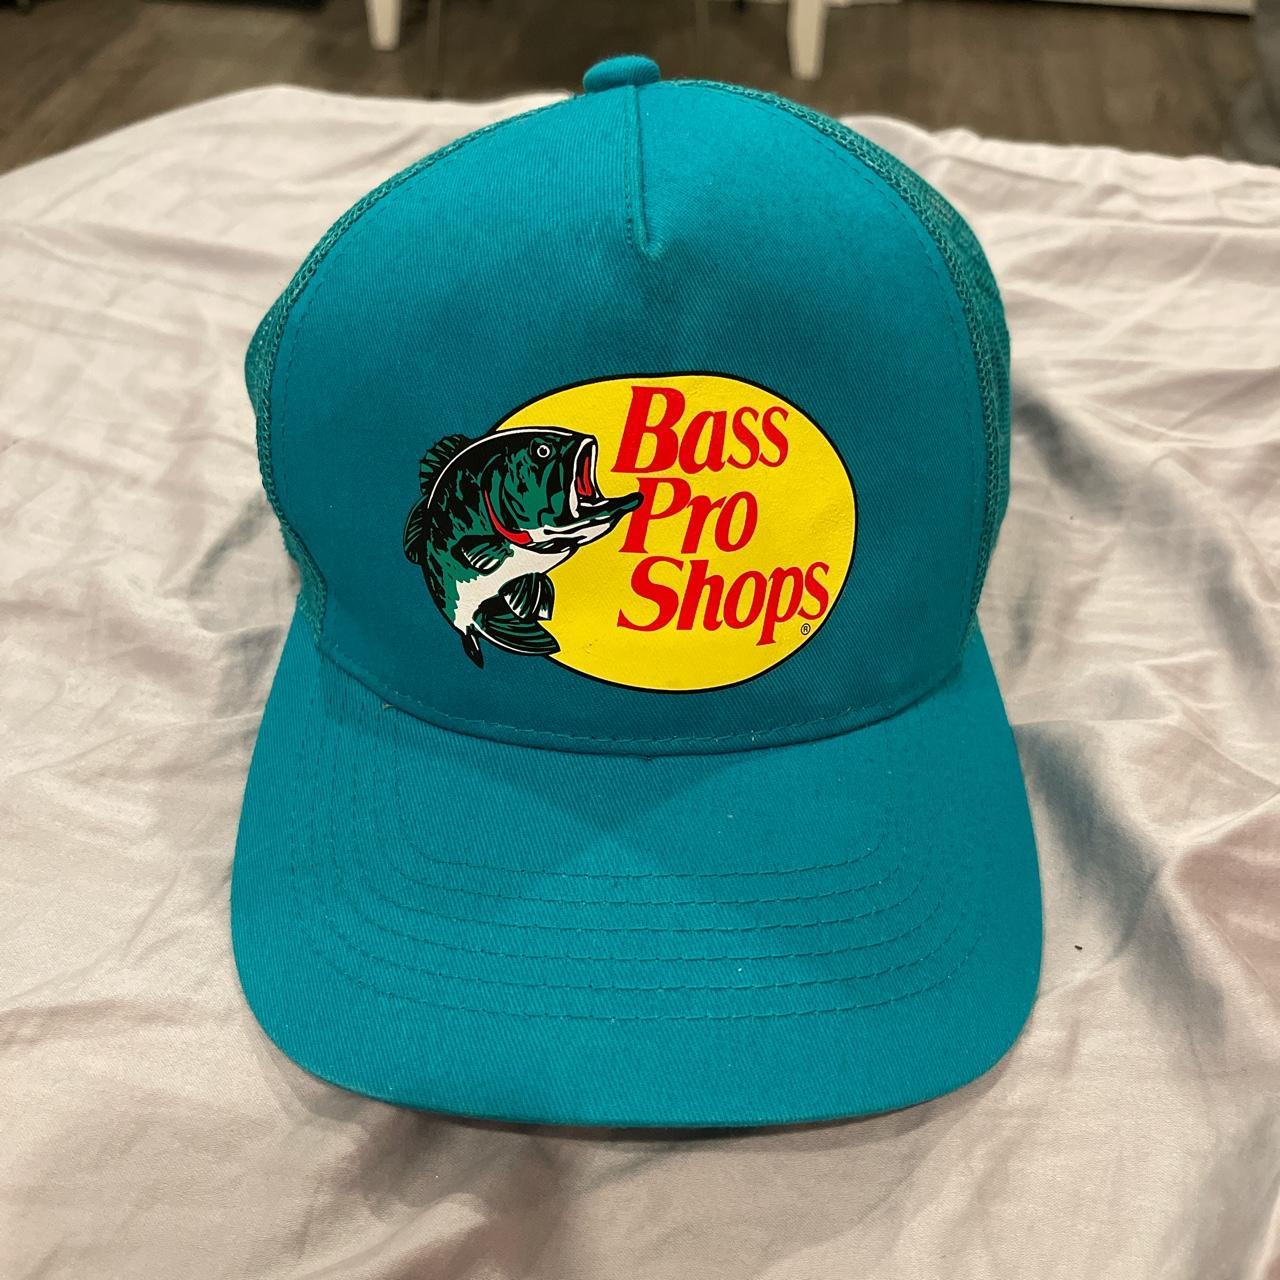 Bass Pro Shops Teal Trucker Hat - Depop